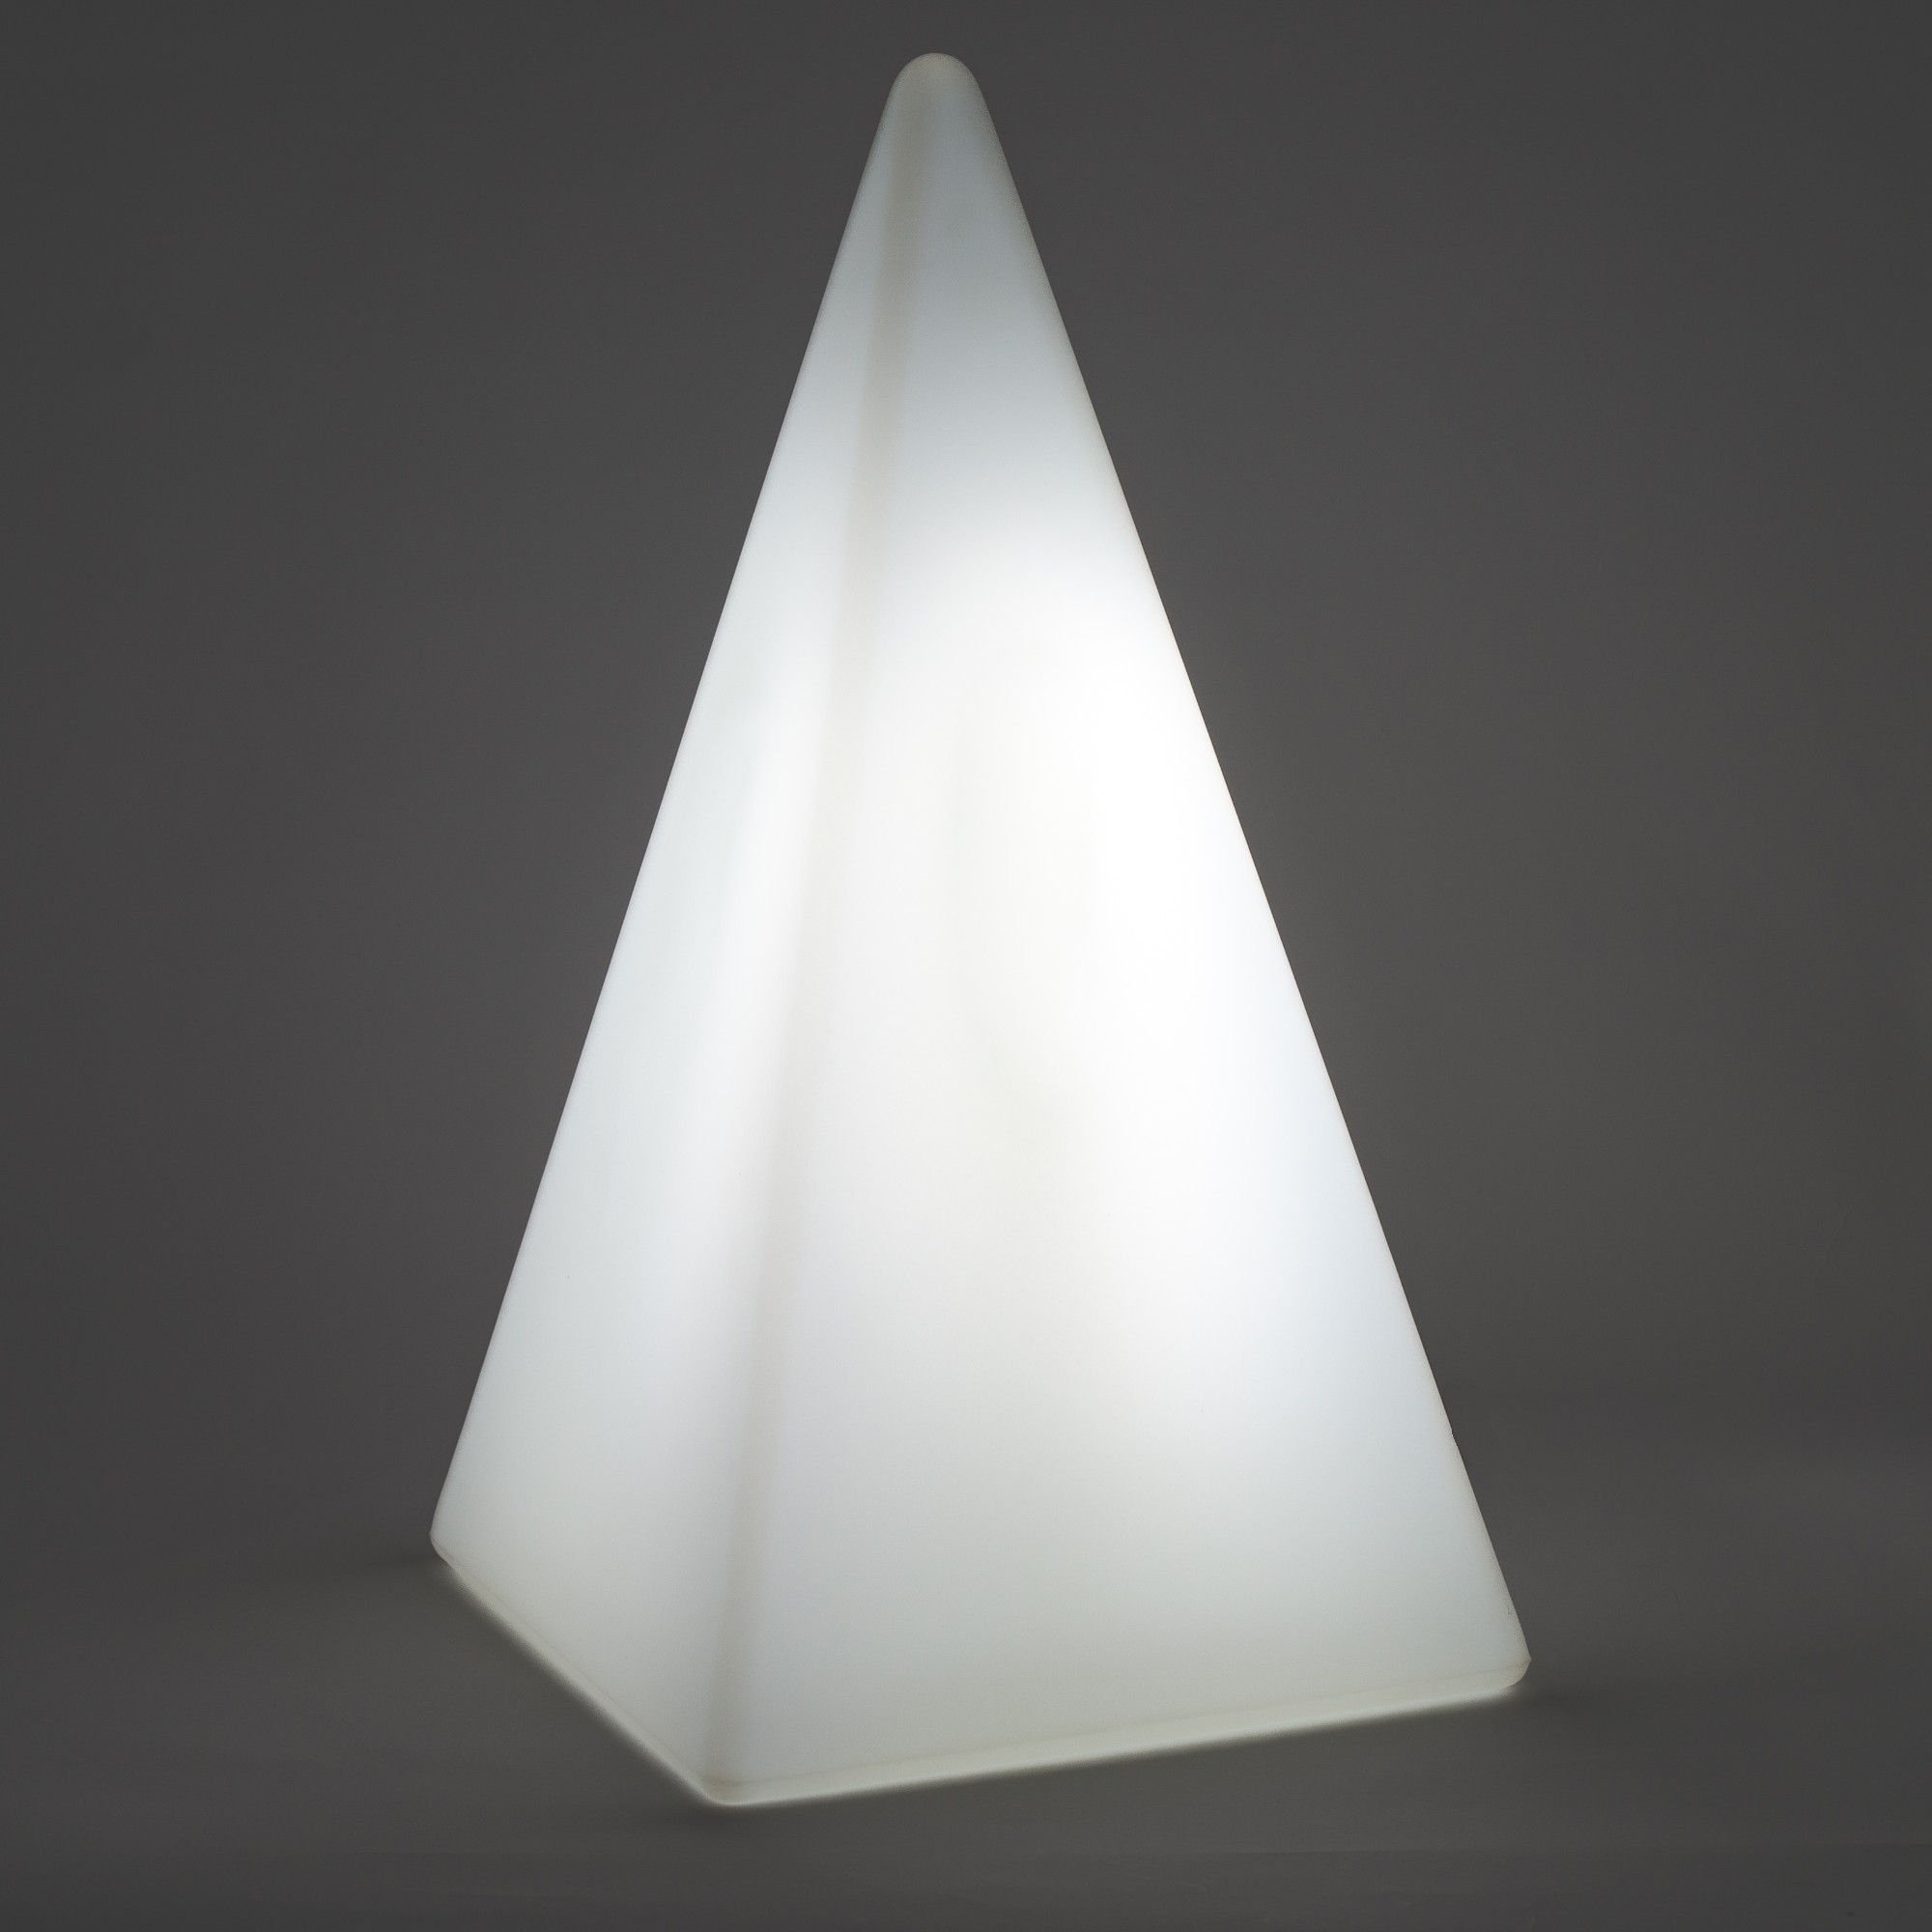 70302 Standleuchte Pyramide 73 cm der Firma EPSTEIN Design Leuchten